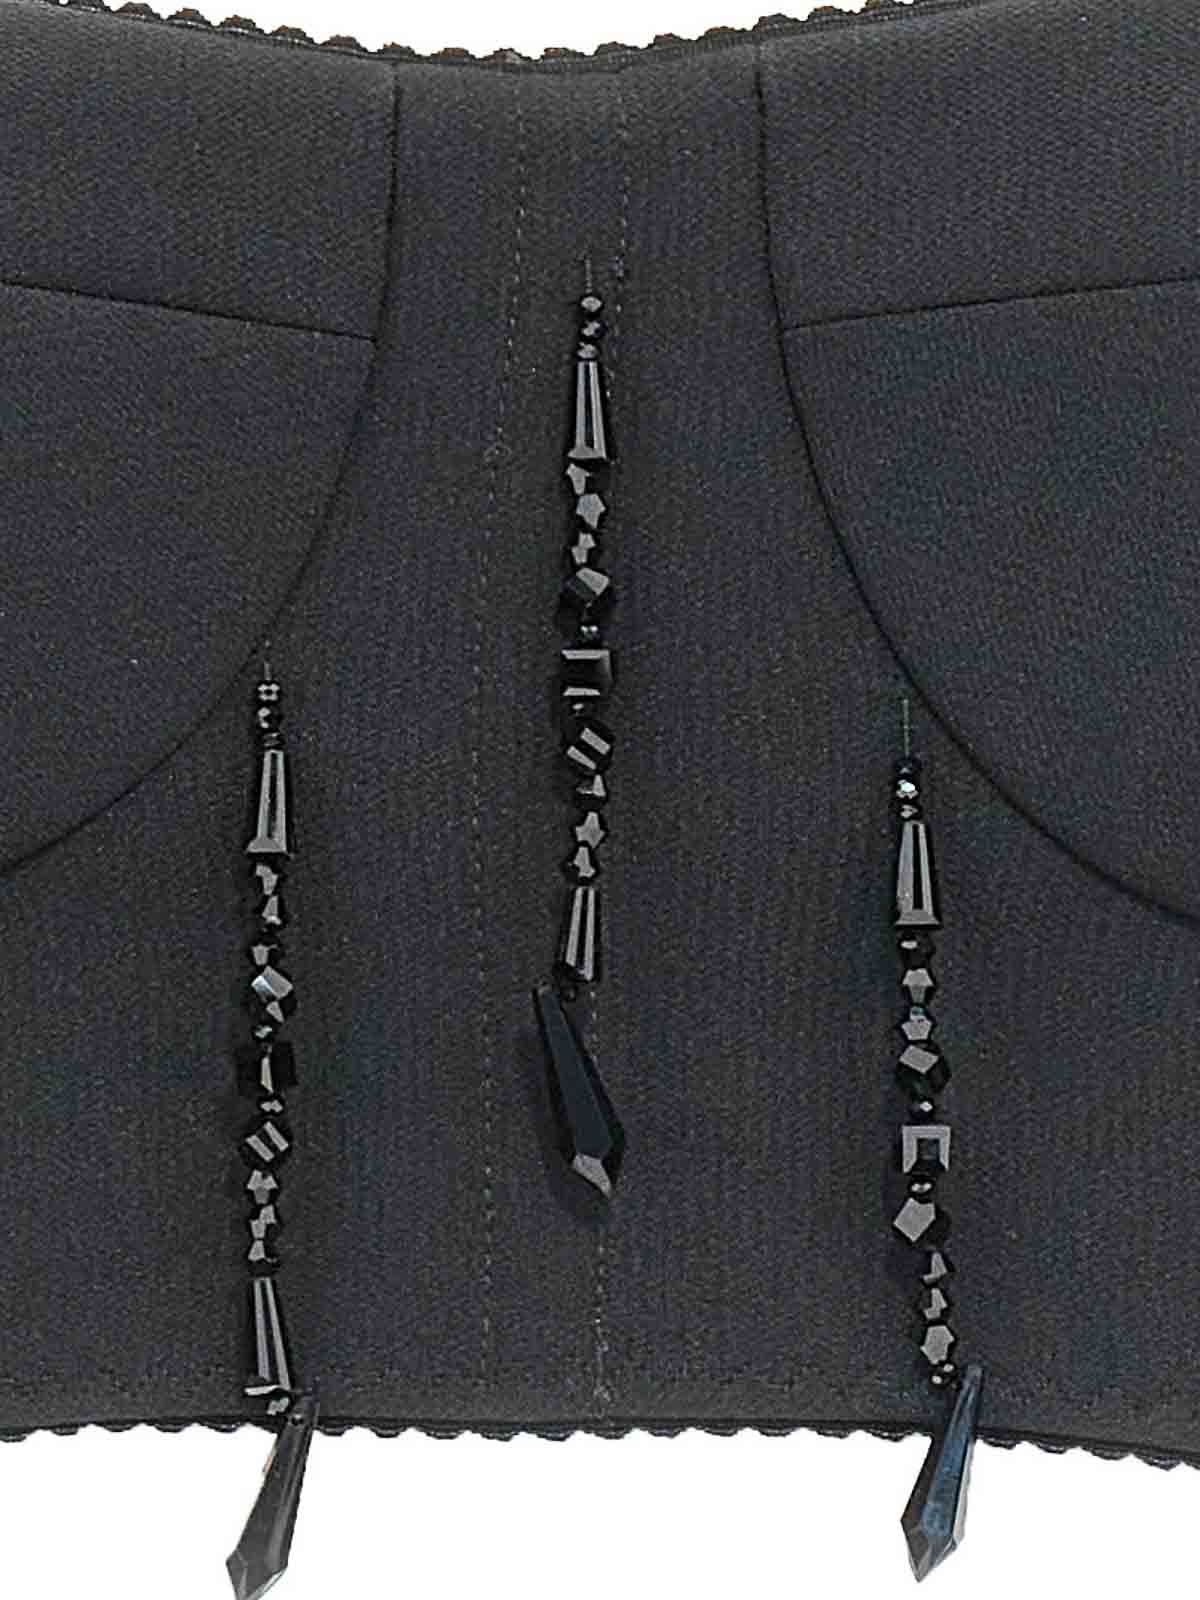 Shop 19:13 Dresscode Bead Bustier Top In Black